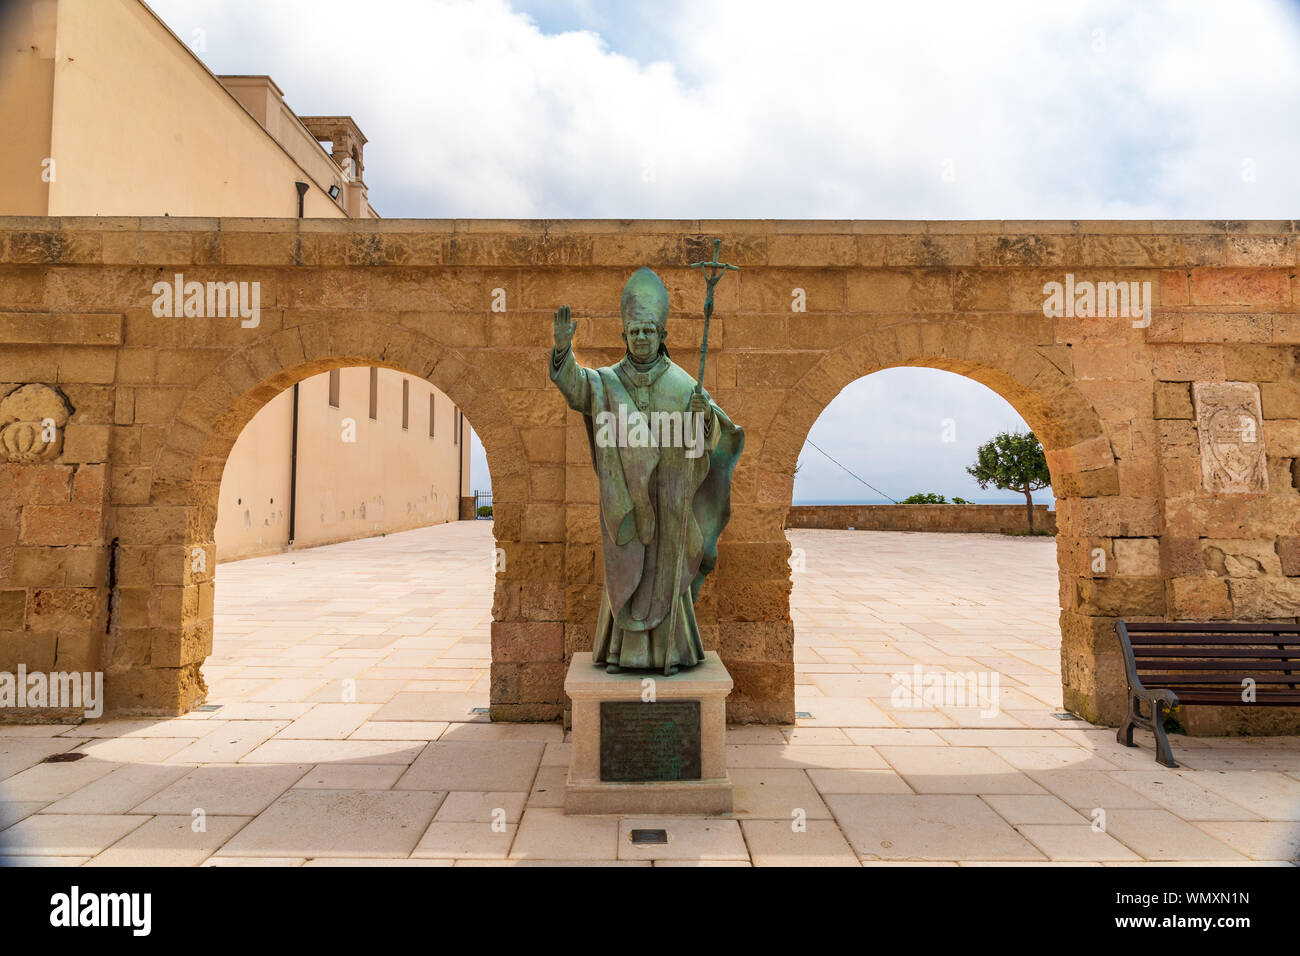 Italy, Apulia, Province of Lecce, Castrignano del Capo. June 05, 2019. Statue of Pope Benedict XVI. Stock Photo